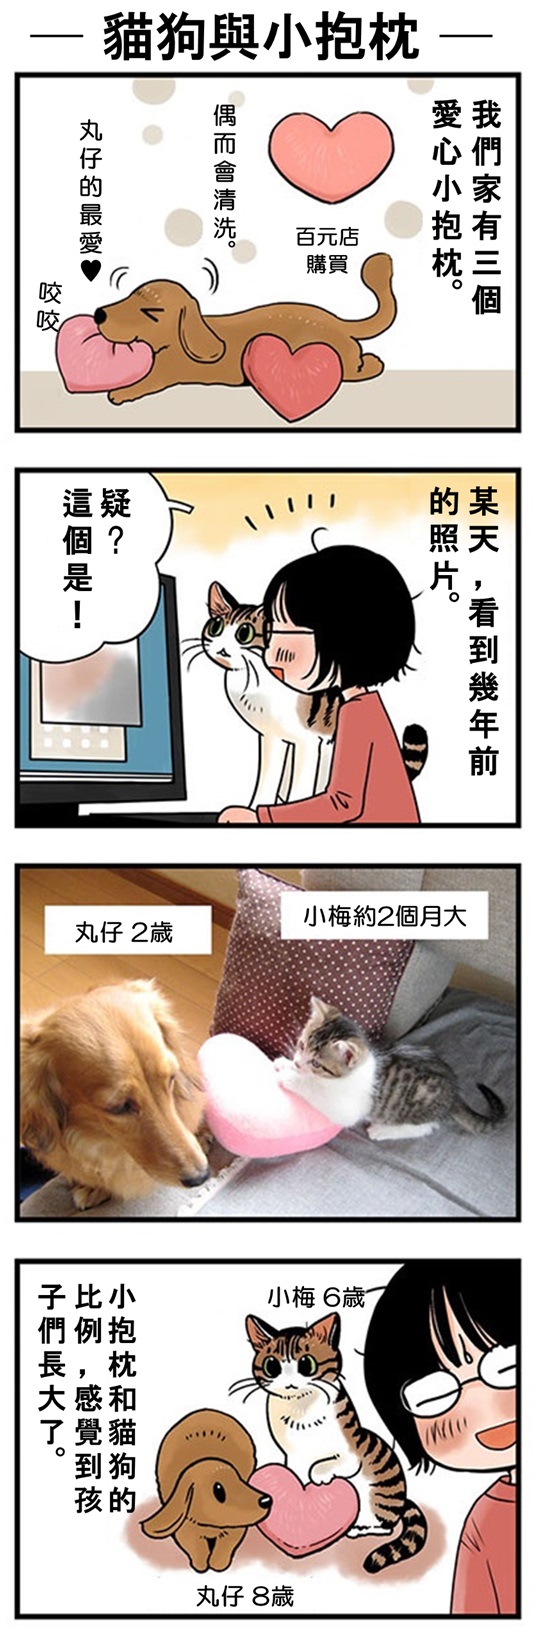 ★山野りんりん猫まみれ漫画★70話-2.jpg